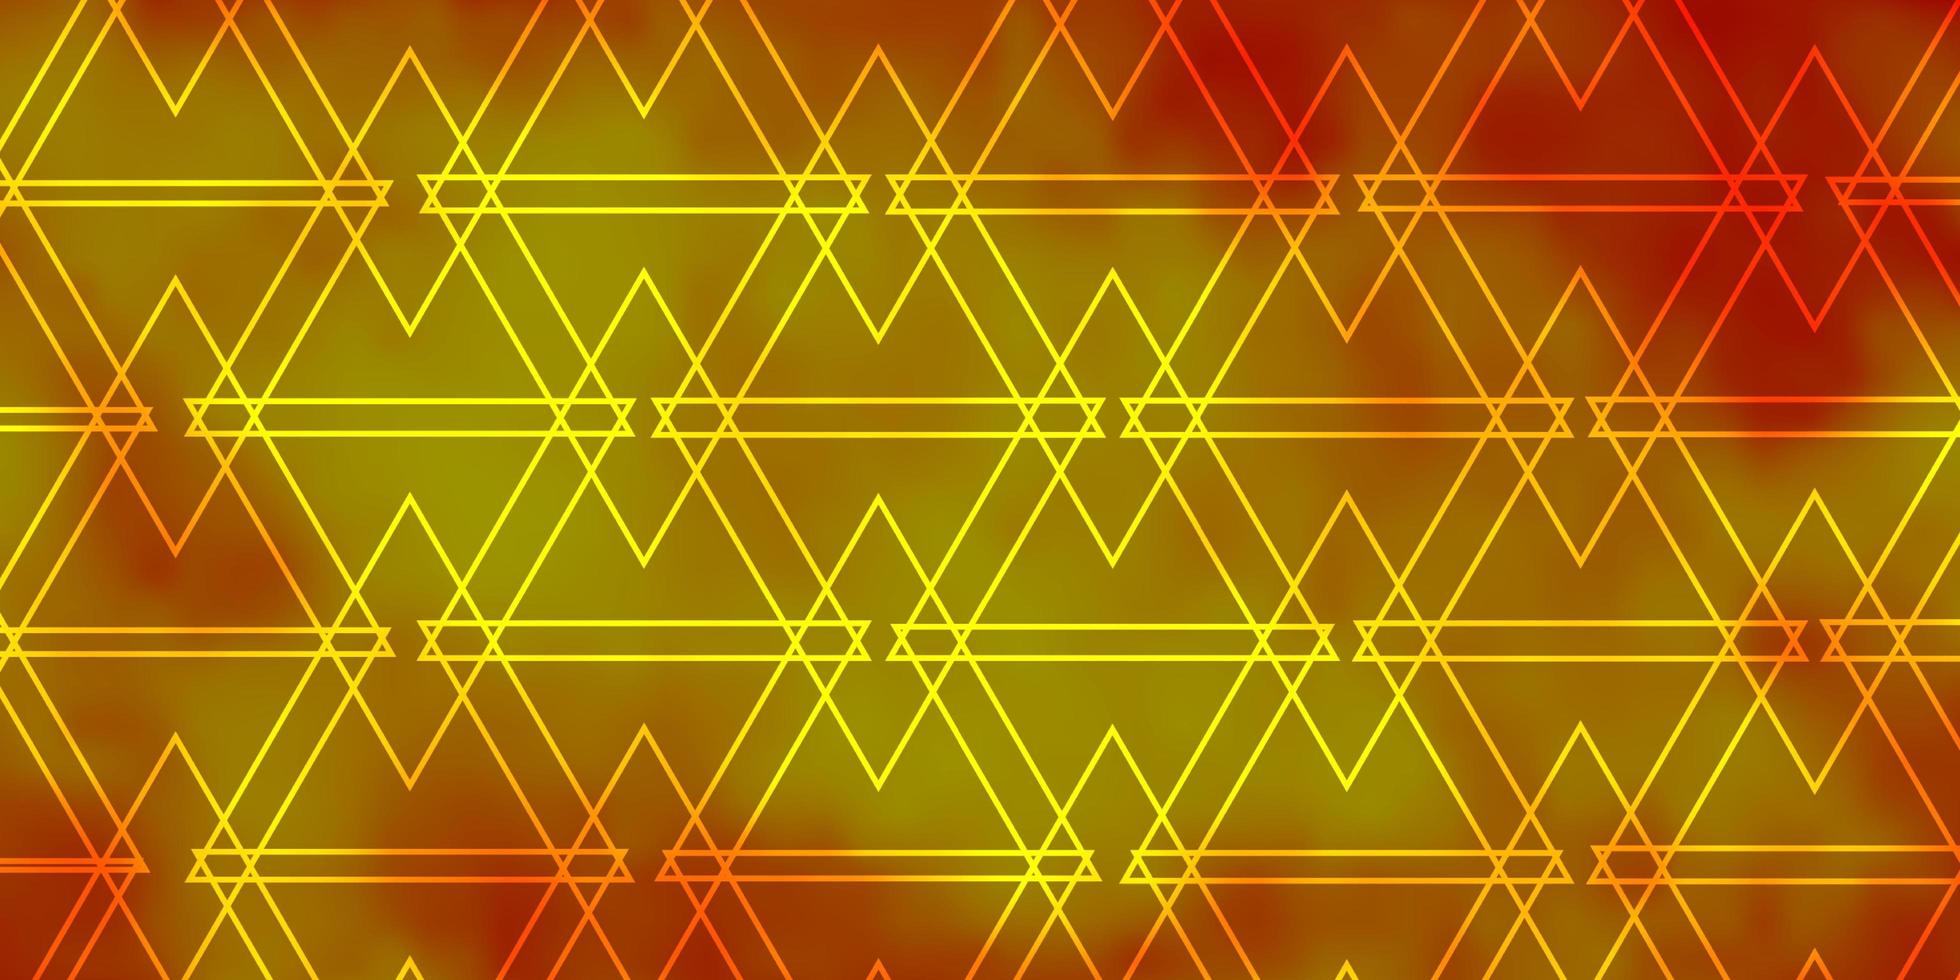 ljus orange vektor mönster med linjer, trianglar.